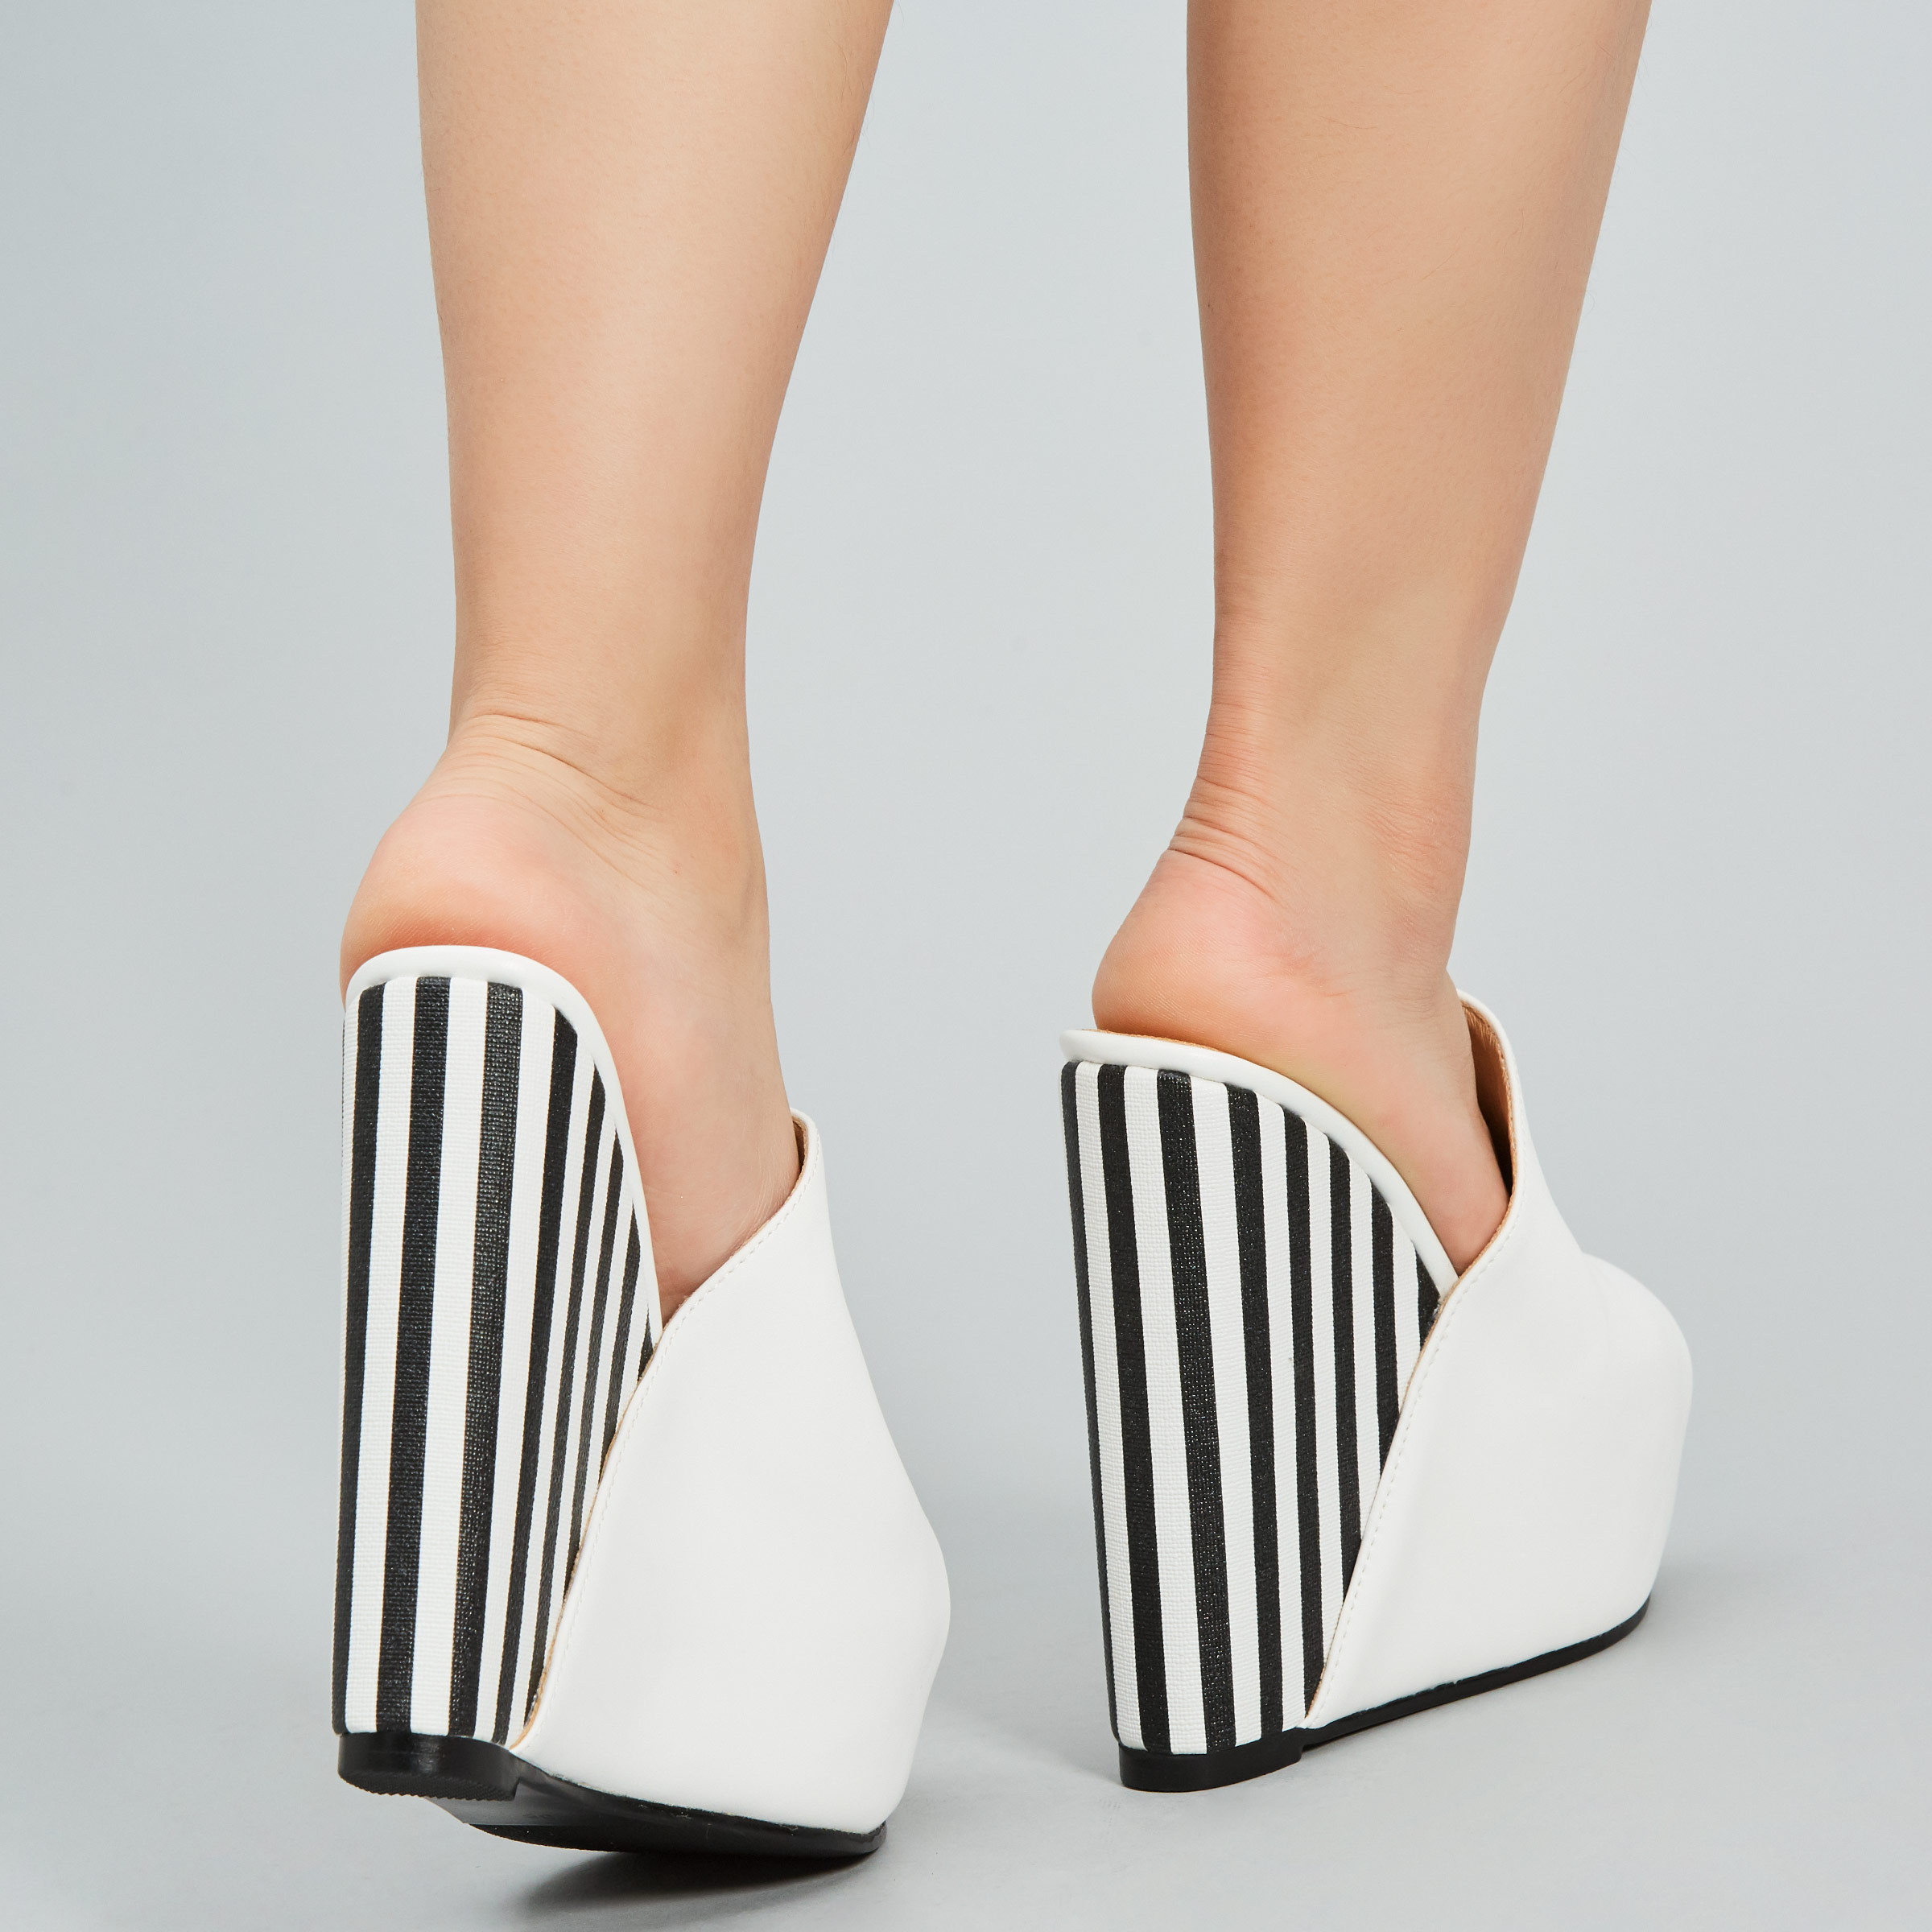 Flip Flop Slip-On Platform Wedge Heel Casual Slippers